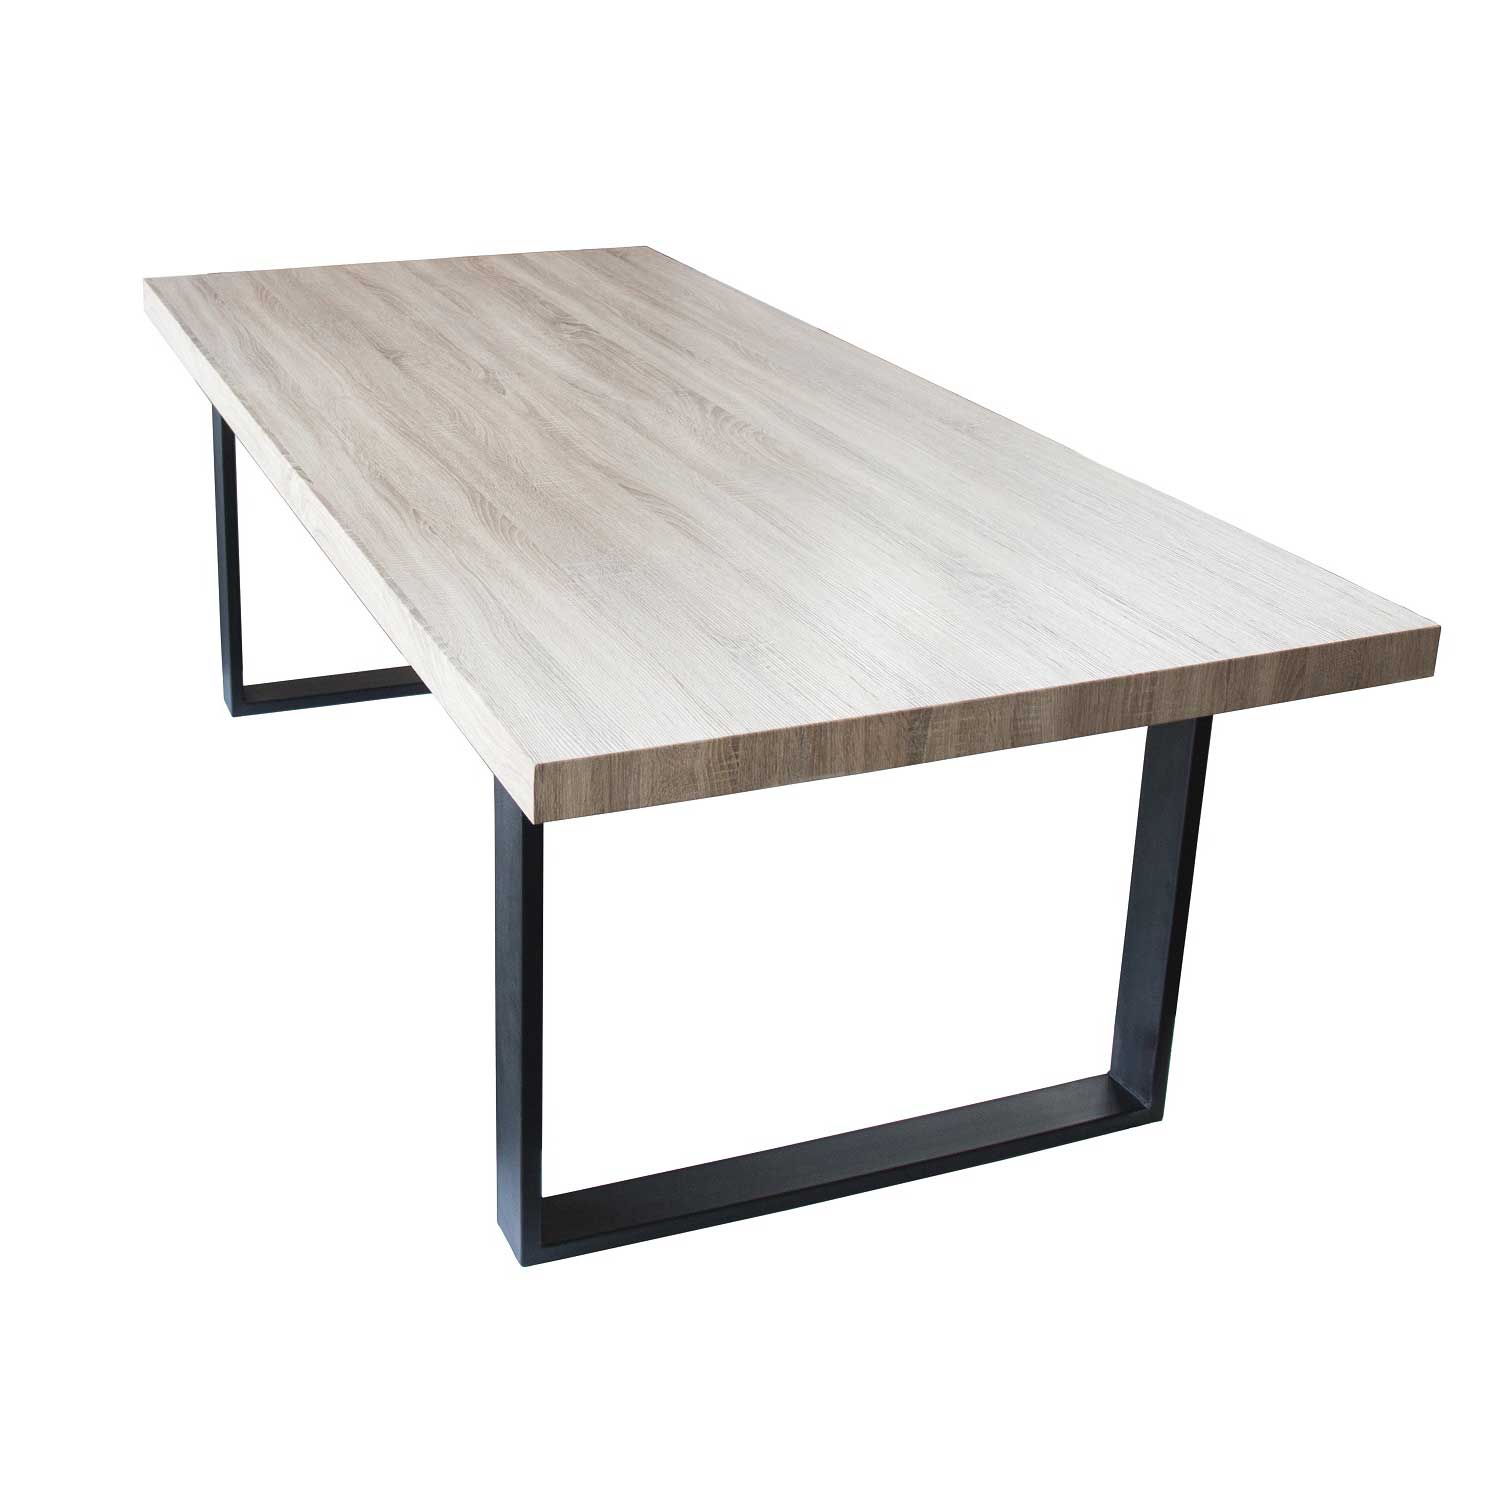 Esszimmertisch Esstisch Kufentisch Holztisch Tisch mit Massive Tischplatte und Kufen - Sanoma Eiche + Schwarze Kufen